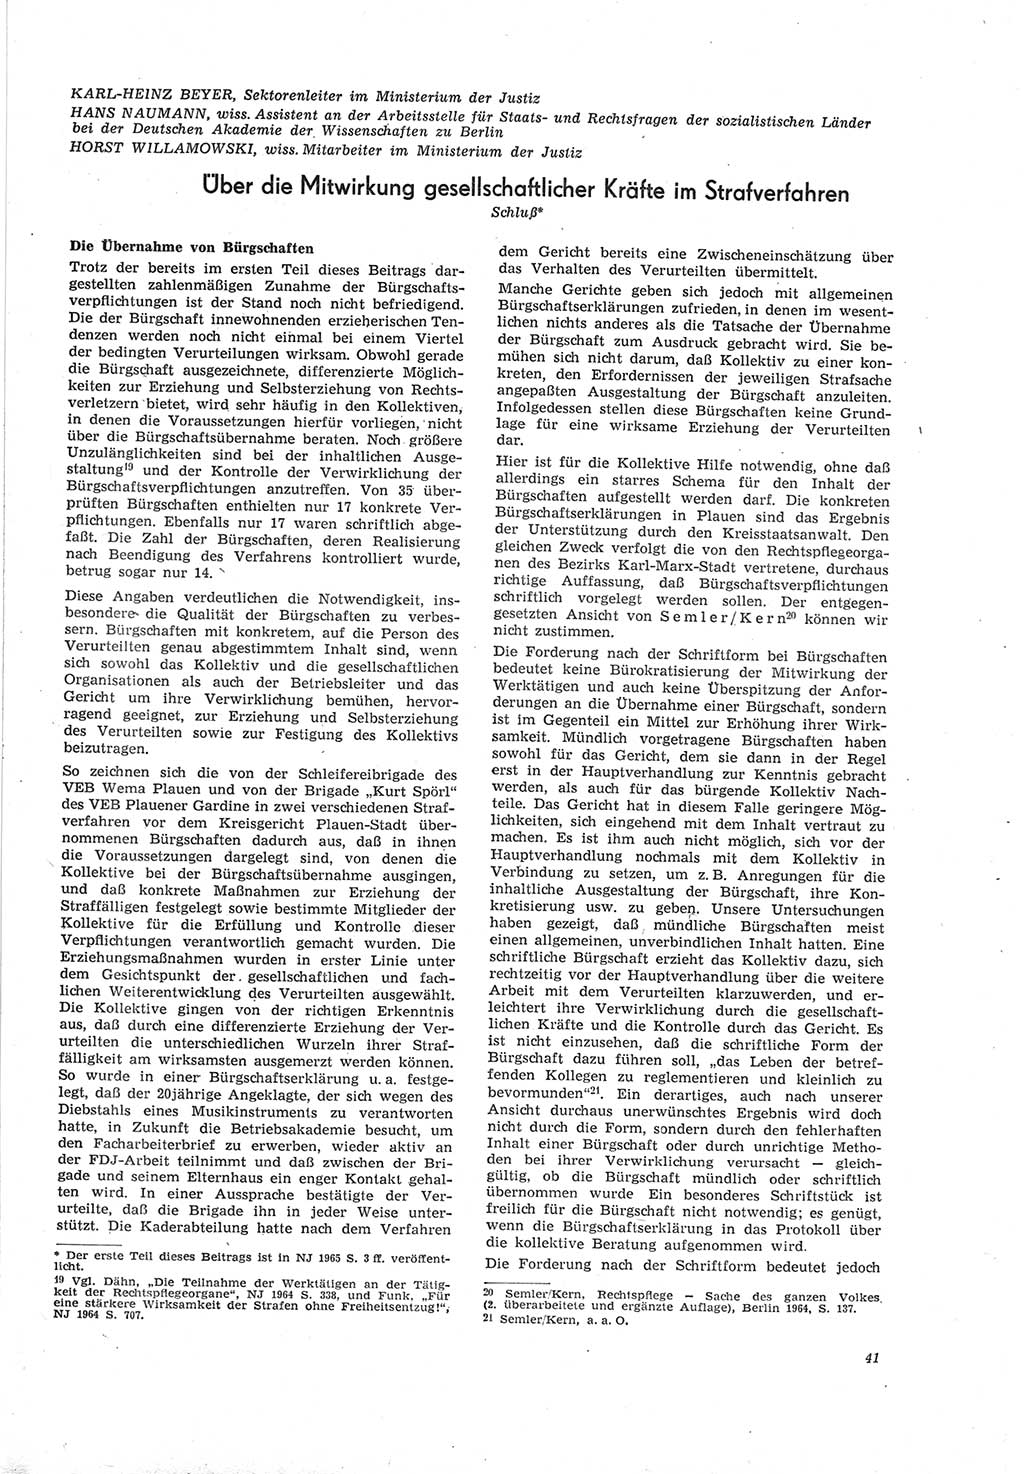 Neue Justiz (NJ), Zeitschrift für Recht und Rechtswissenschaft [Deutsche Demokratische Republik (DDR)], 19. Jahrgang 1965, Seite 41 (NJ DDR 1965, S. 41)